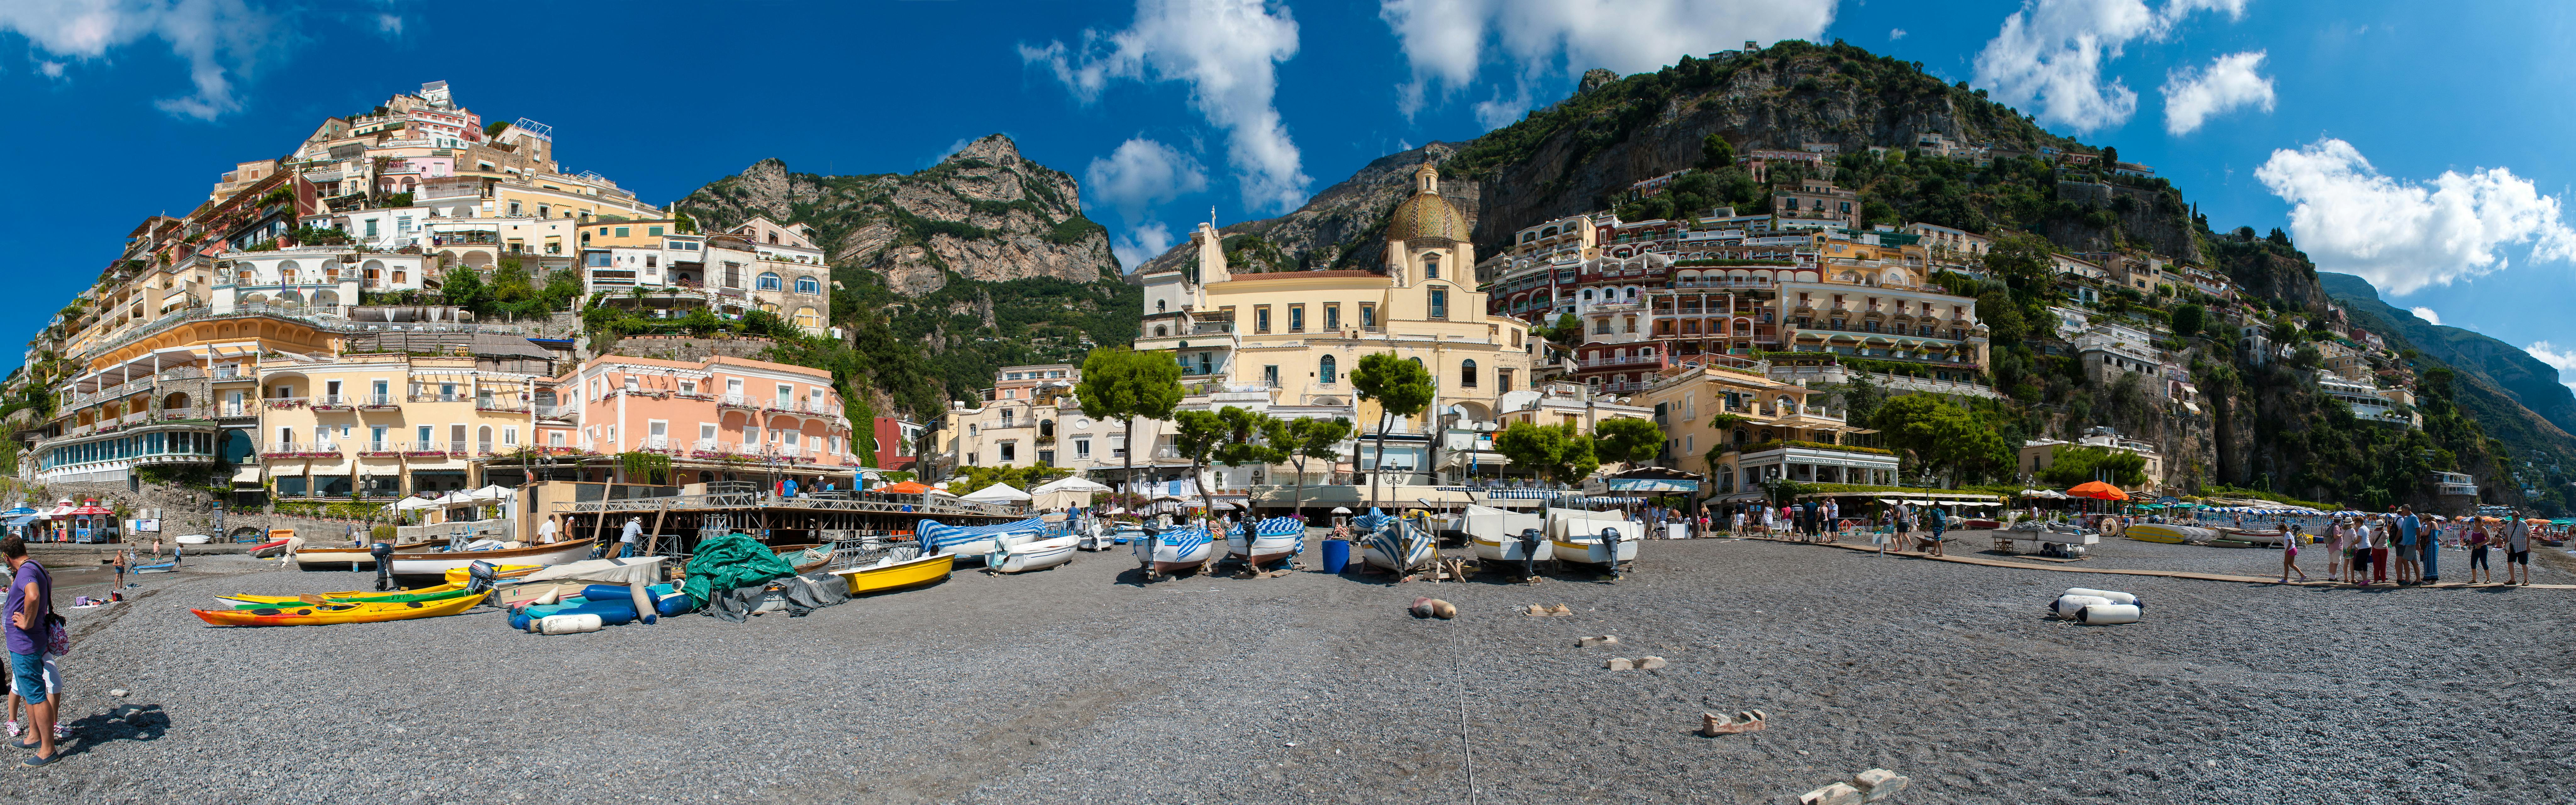 Excursão pelo litoral da Costa Amalfitana